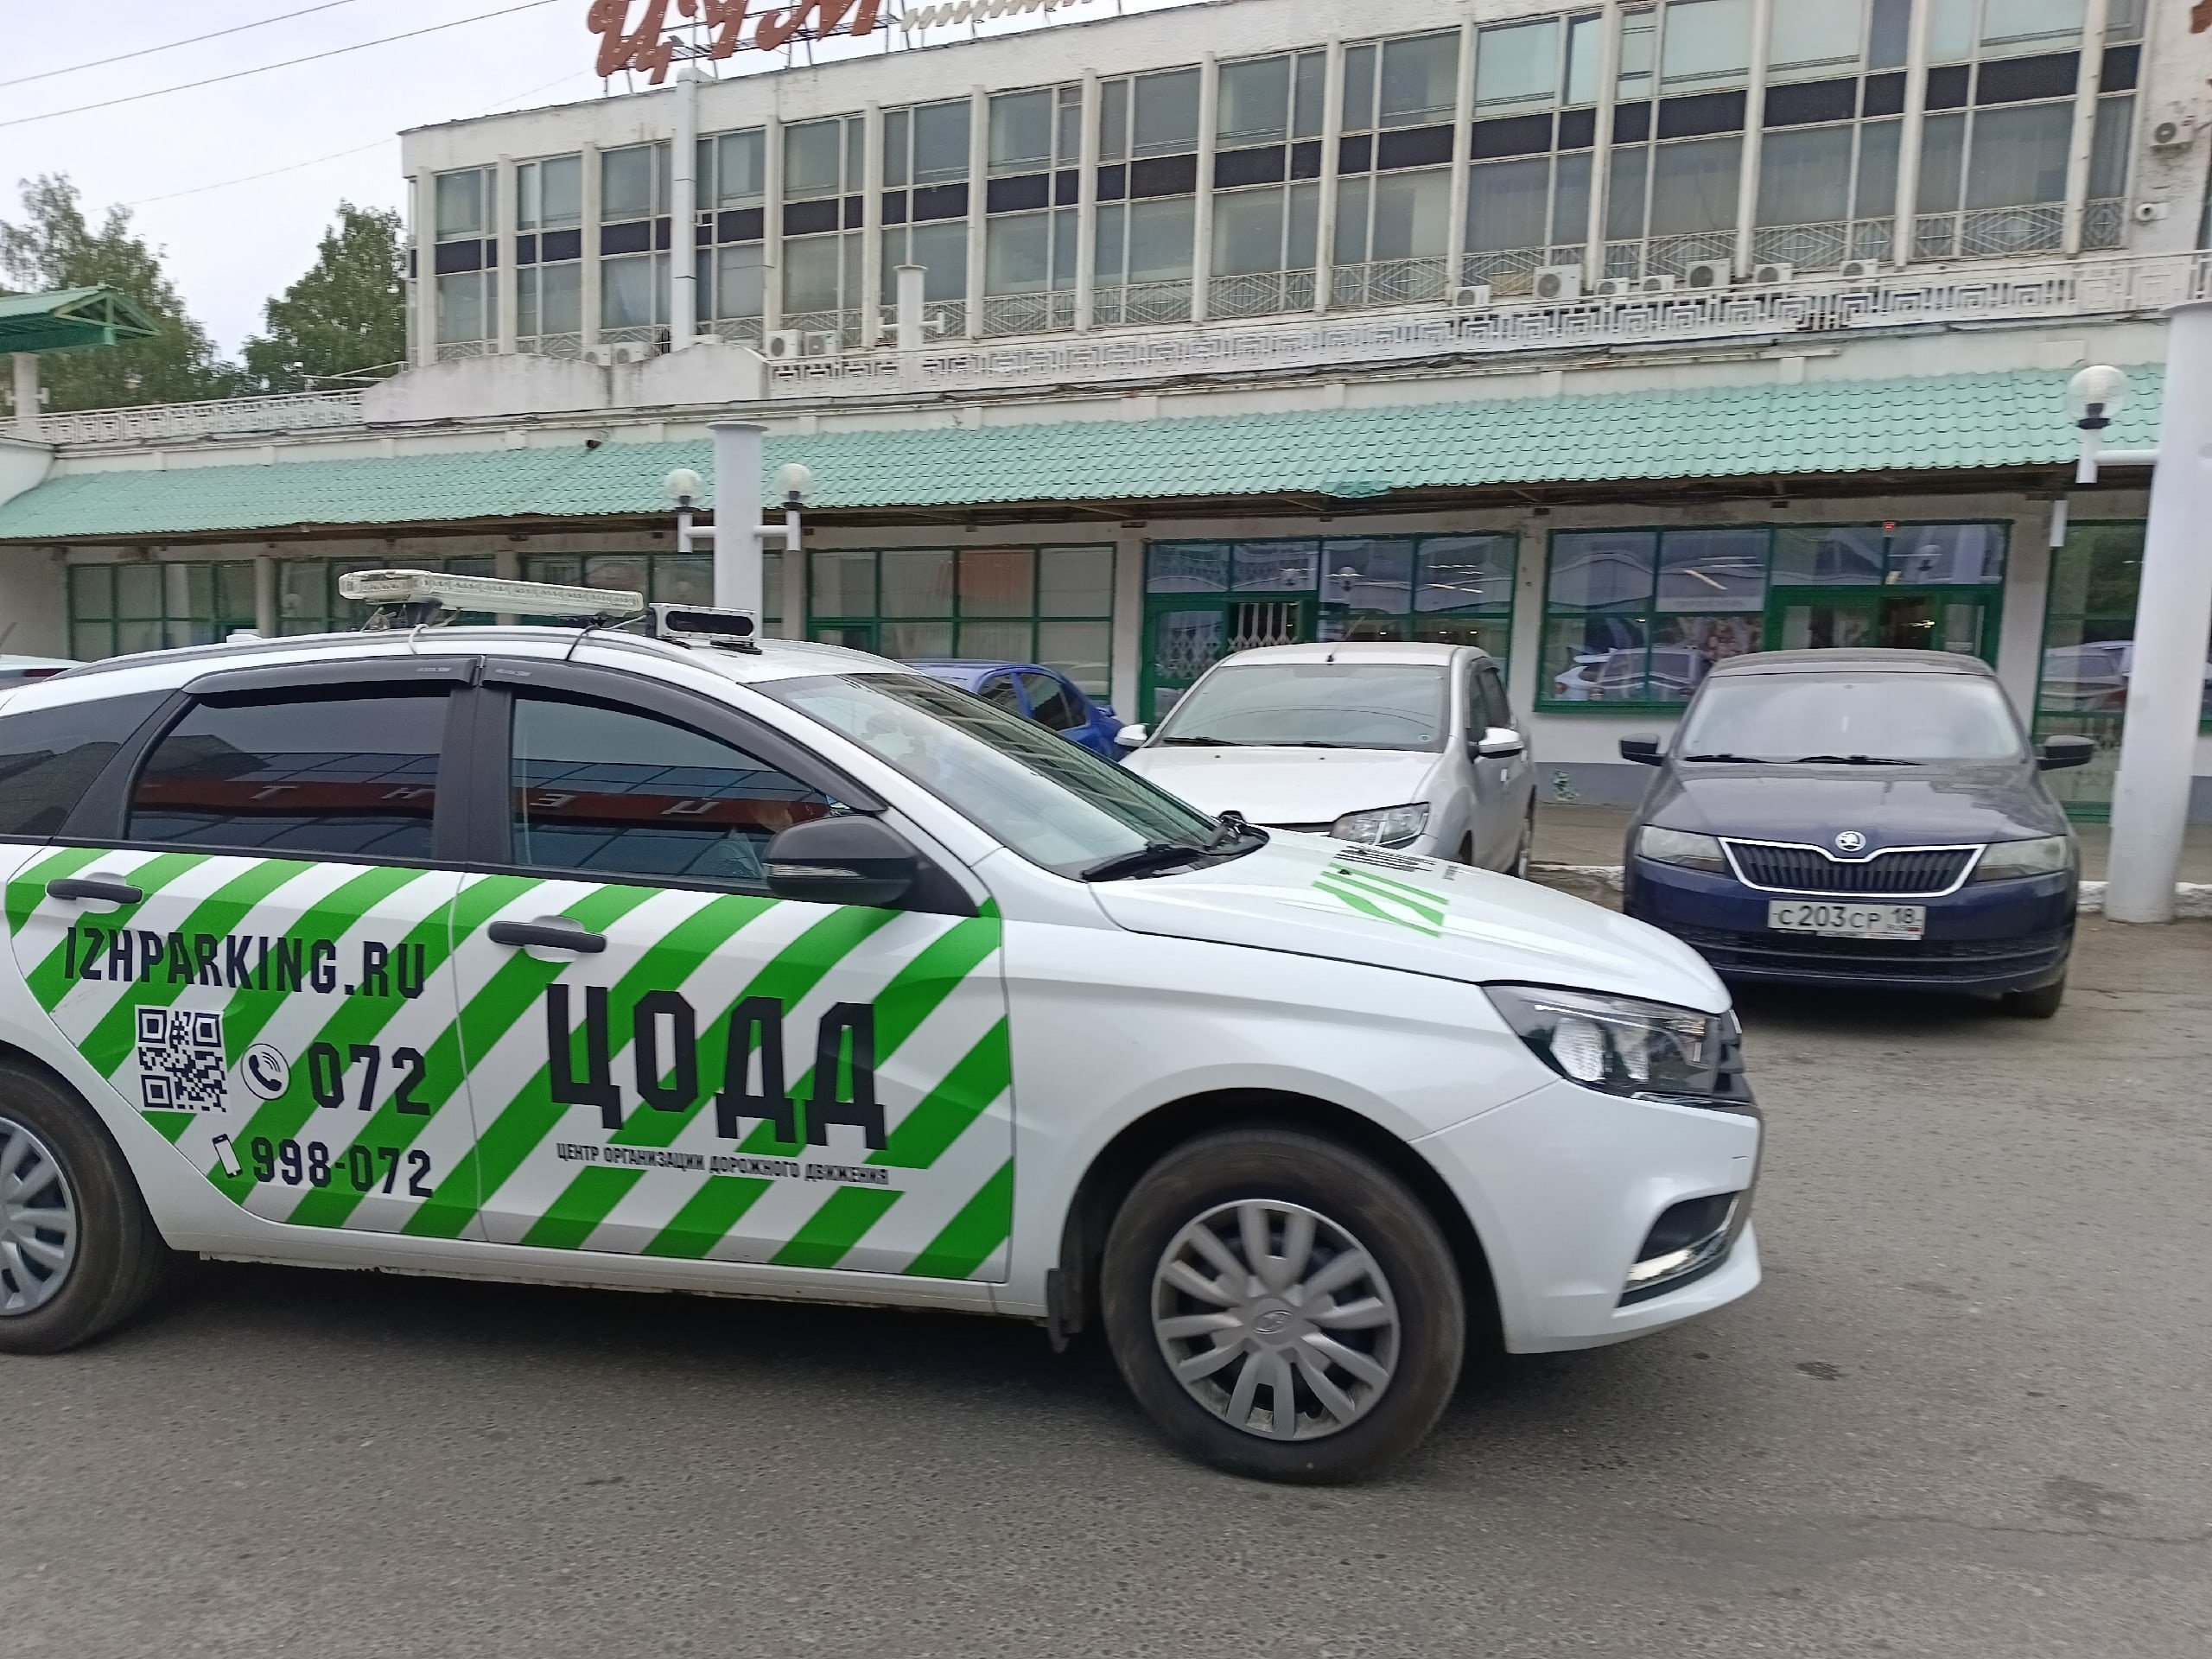 Итоги дня: новые платные парковки в Ижевске и действующие пляжи в Удмуртии